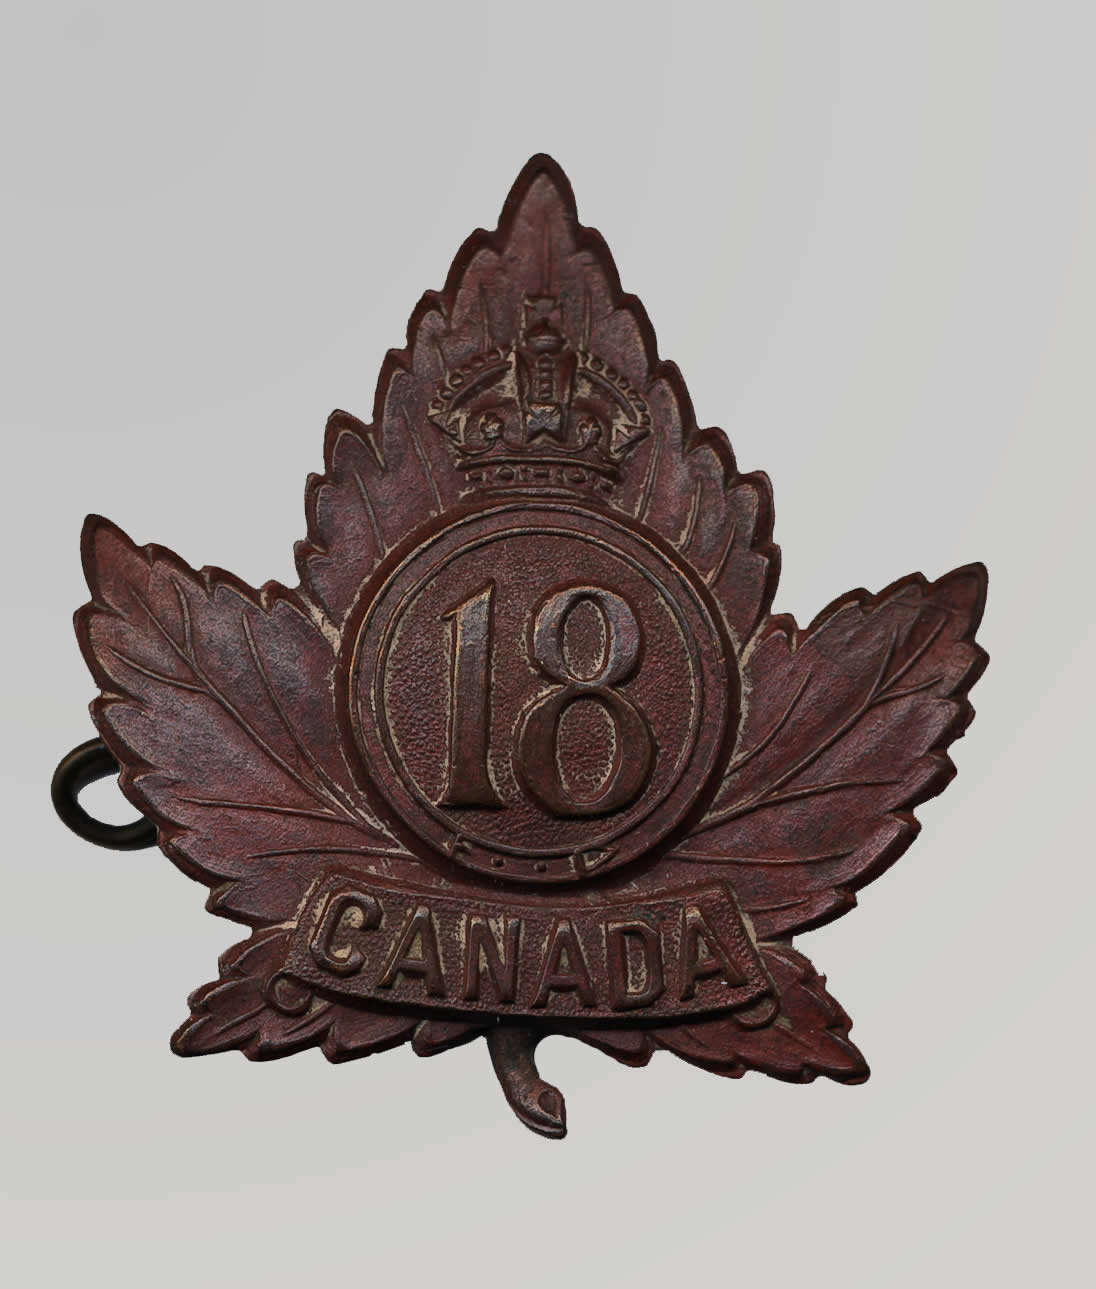 Cap Badge